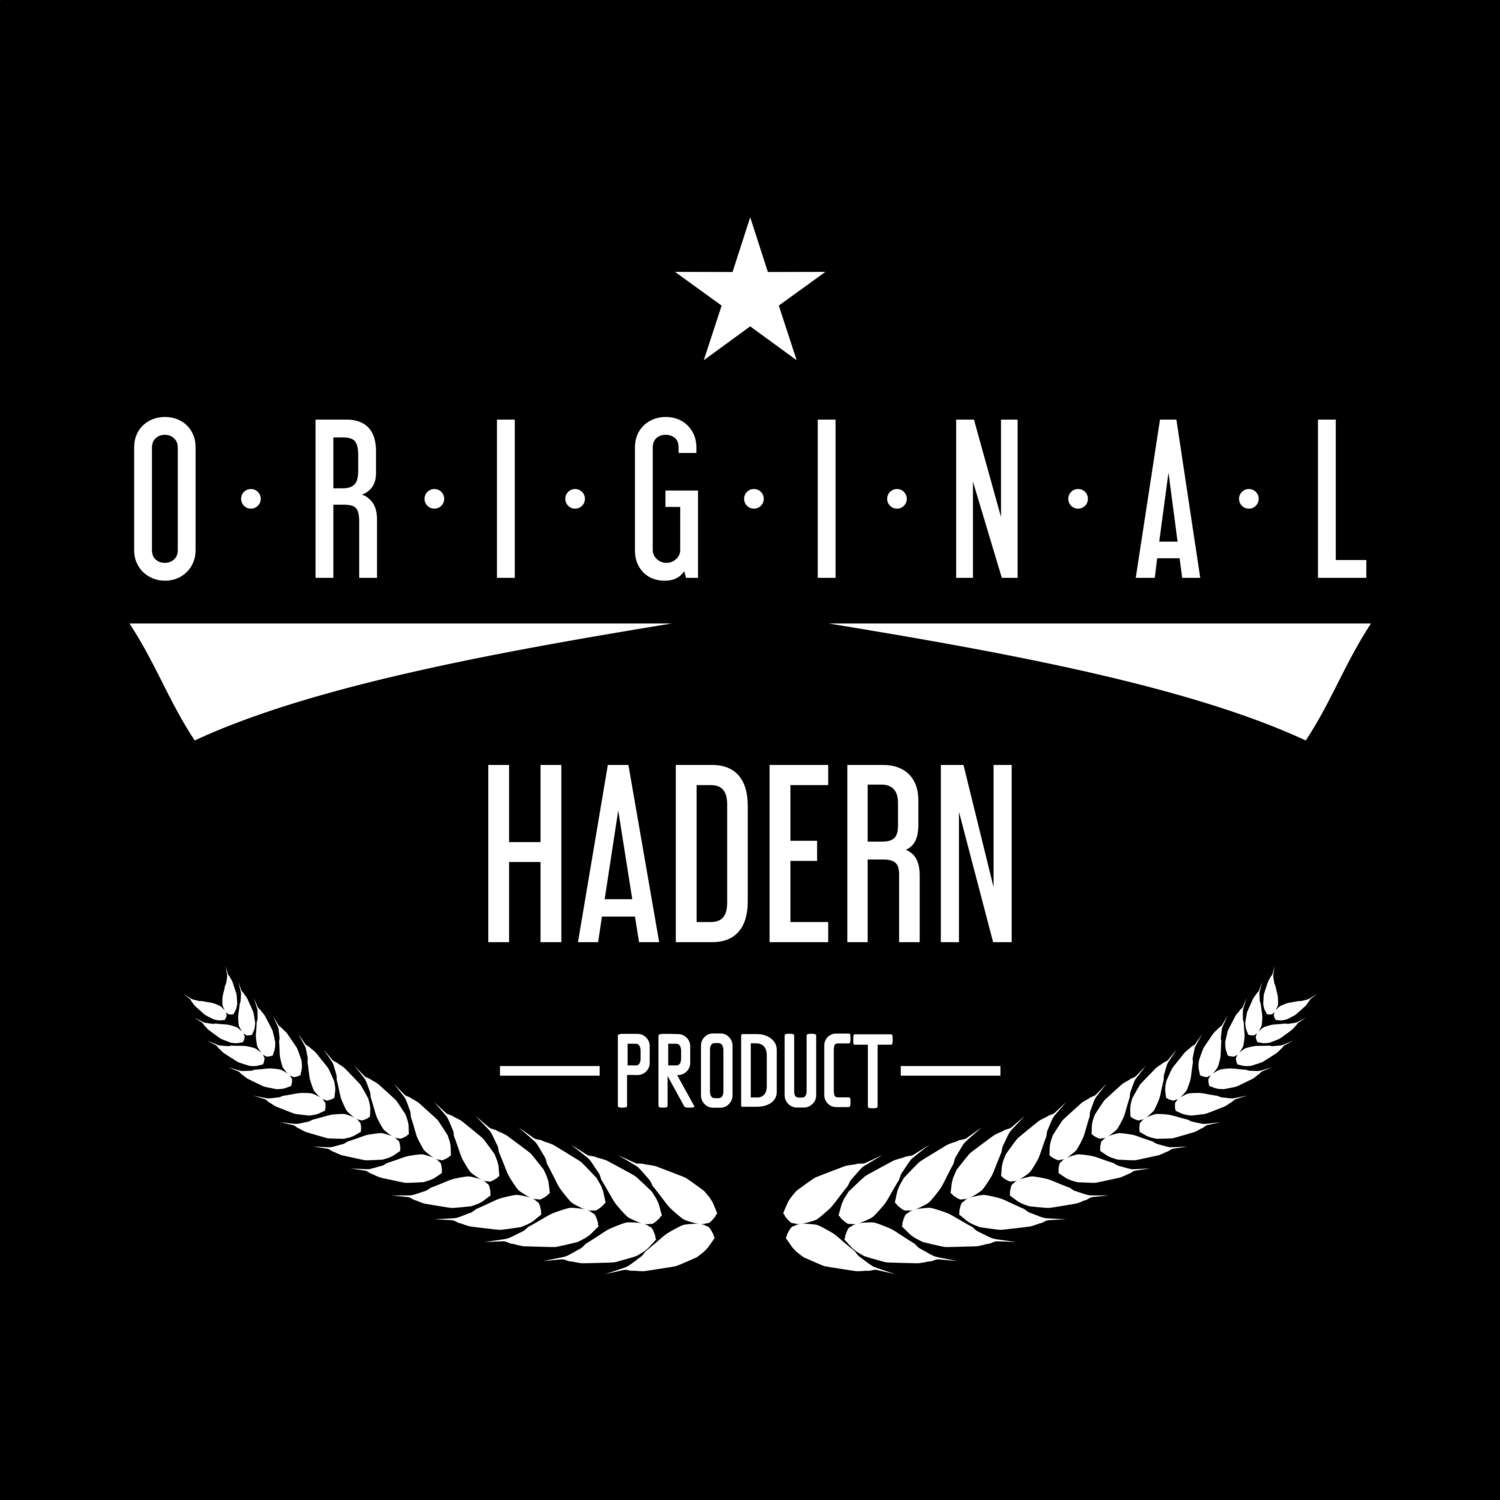 Hadern T-Shirt »Original Product«